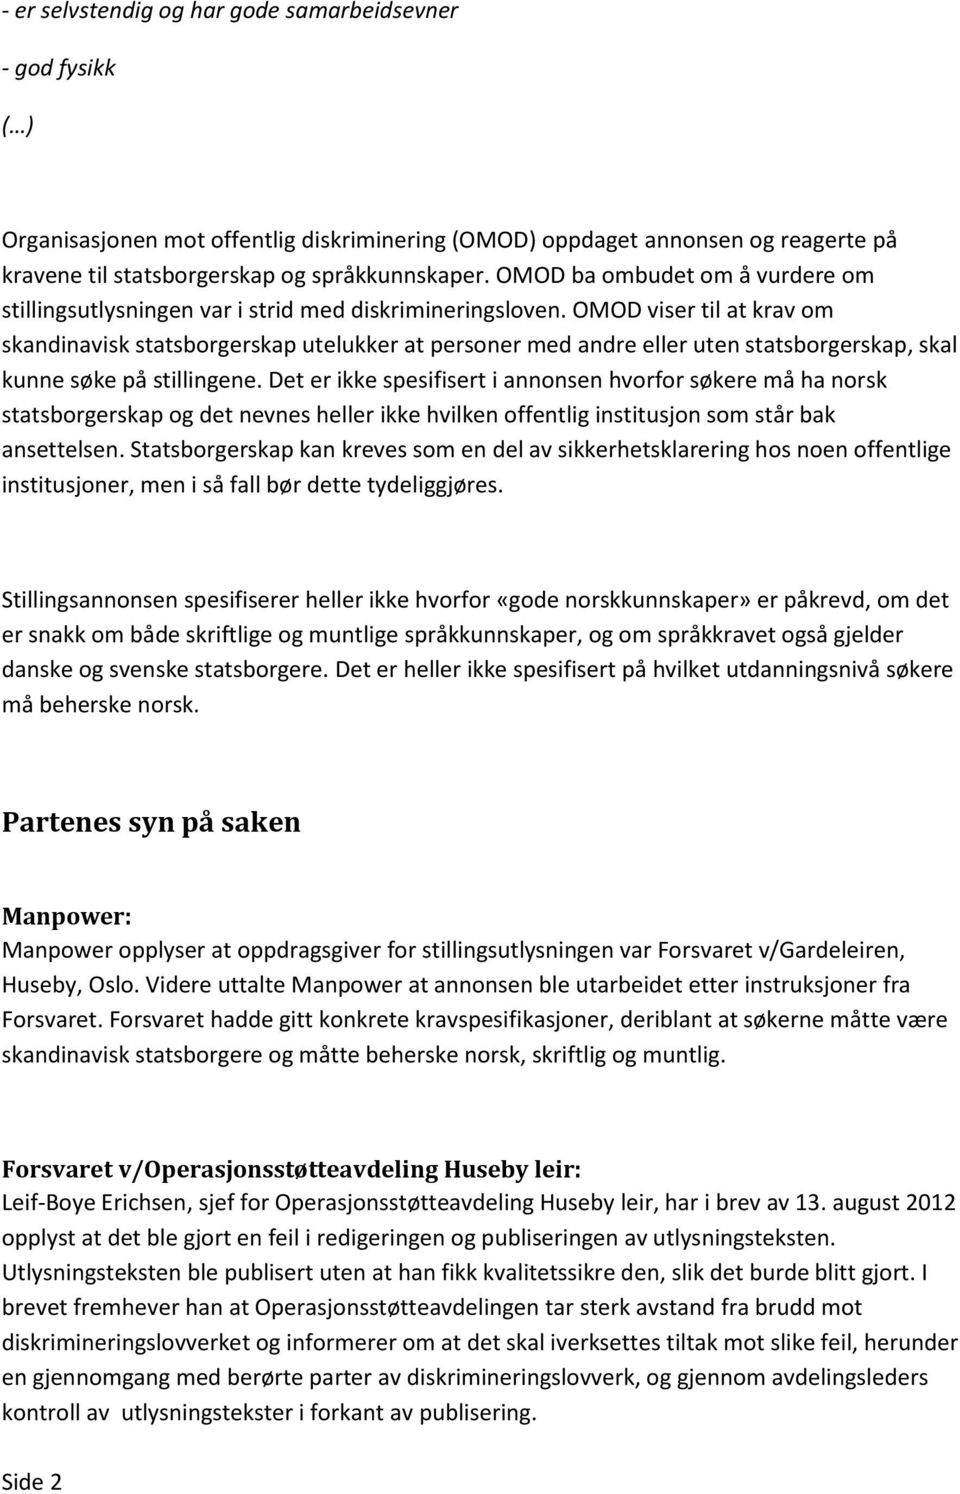 OMOD viser til at krav om skandinavisk statsborgerskap utelukker at personer med andre eller uten statsborgerskap, skal kunne søke på stillingene.